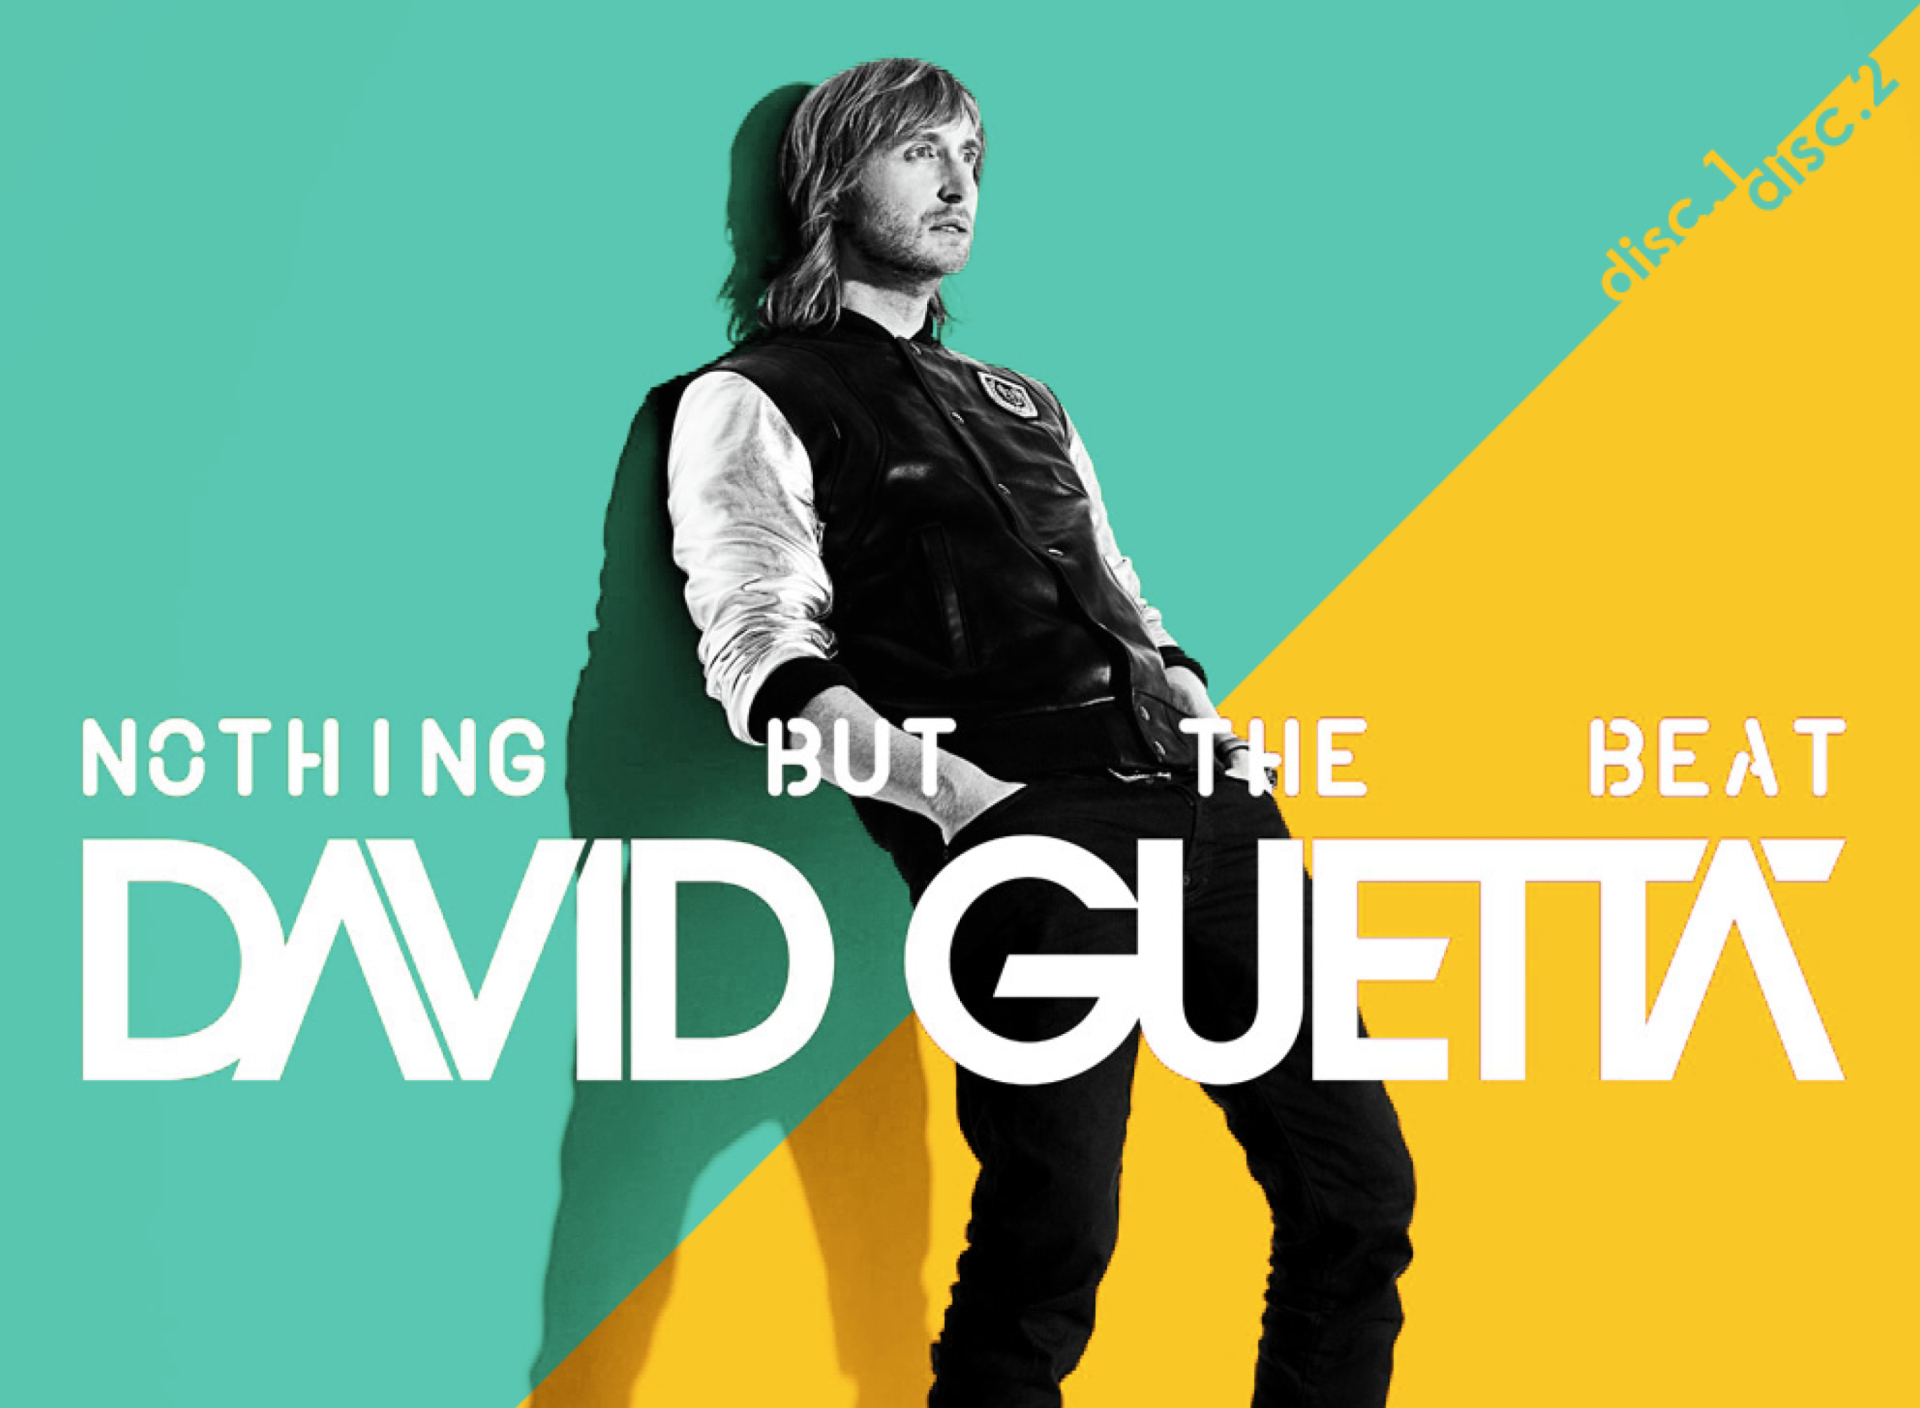 David Guetta - Nothing but the Beat screenshot #1 1920x1408